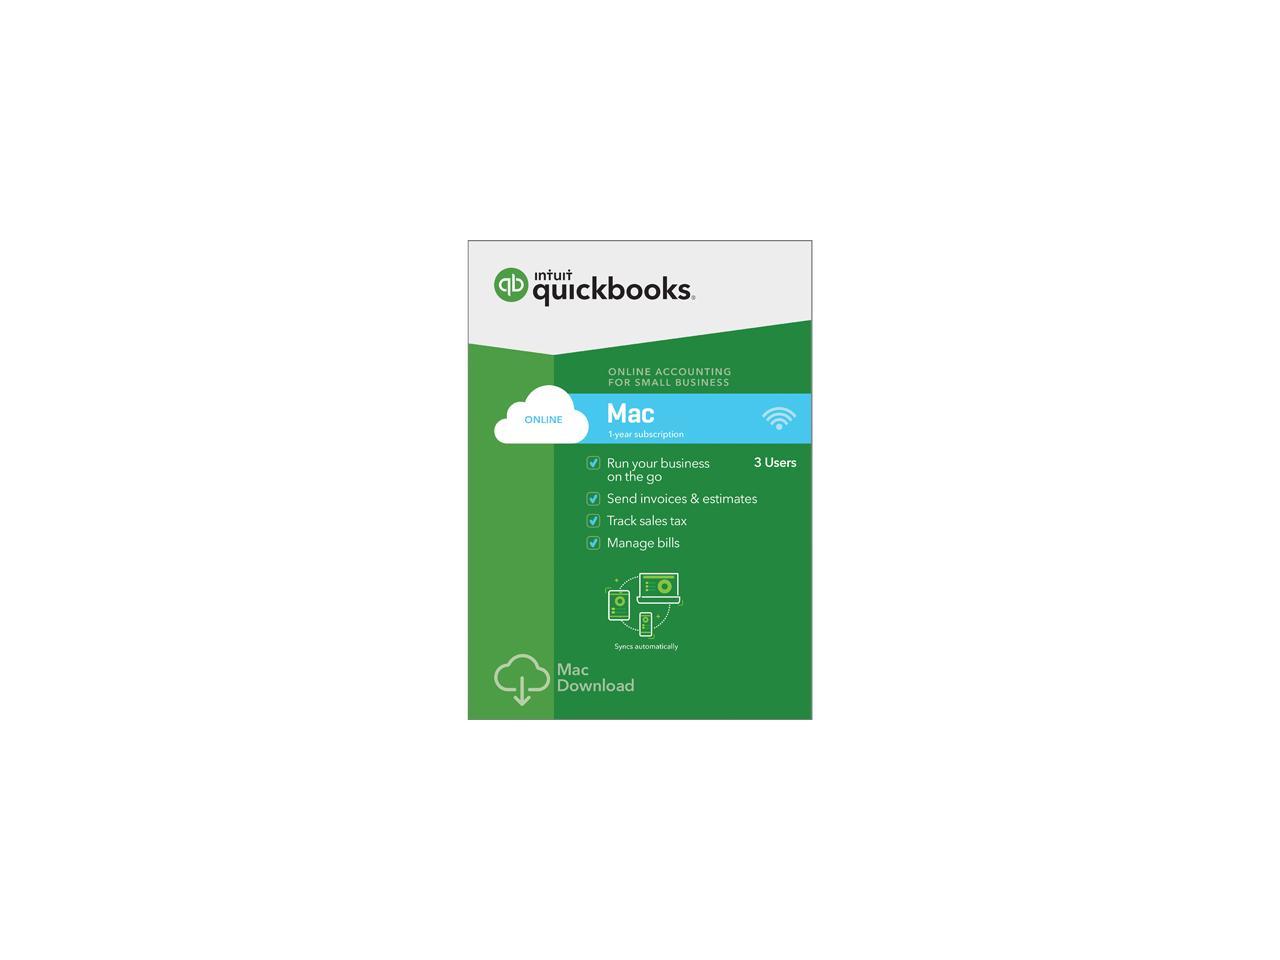 intuit quickbooks tutorial youtube